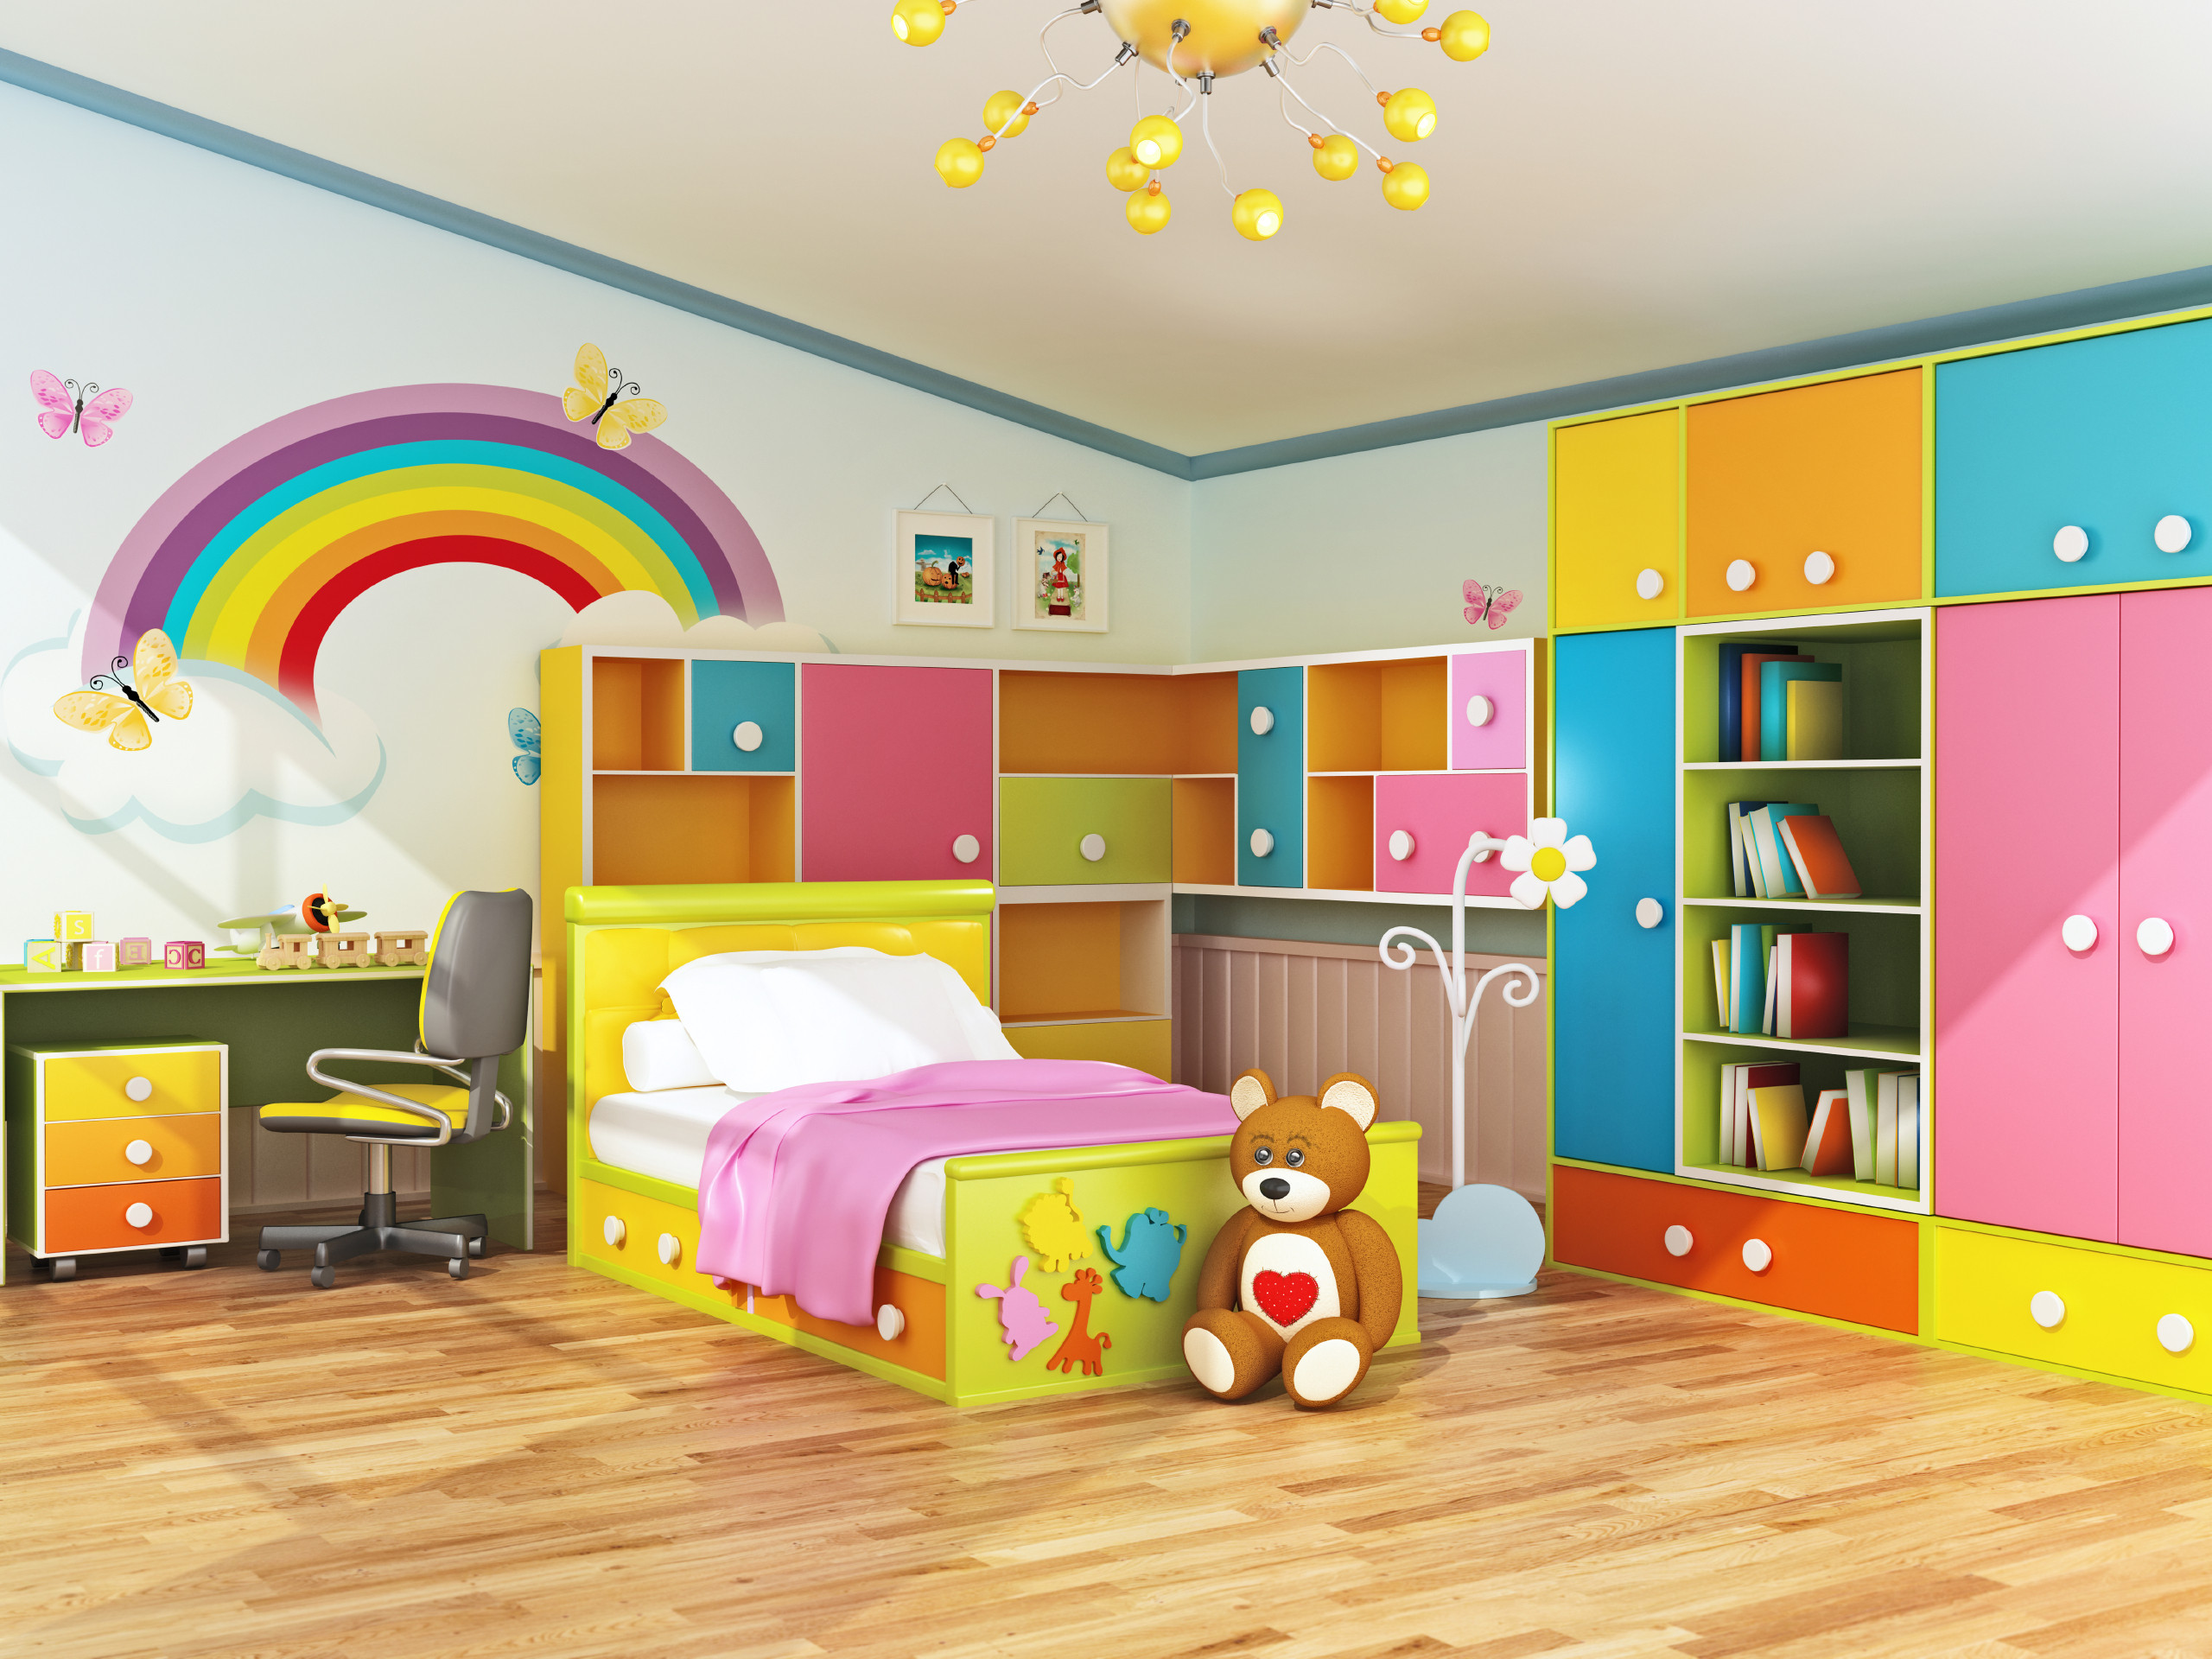 Kids Bedroom Pictures
 Plan Ahead When Decorating Kids Bedrooms